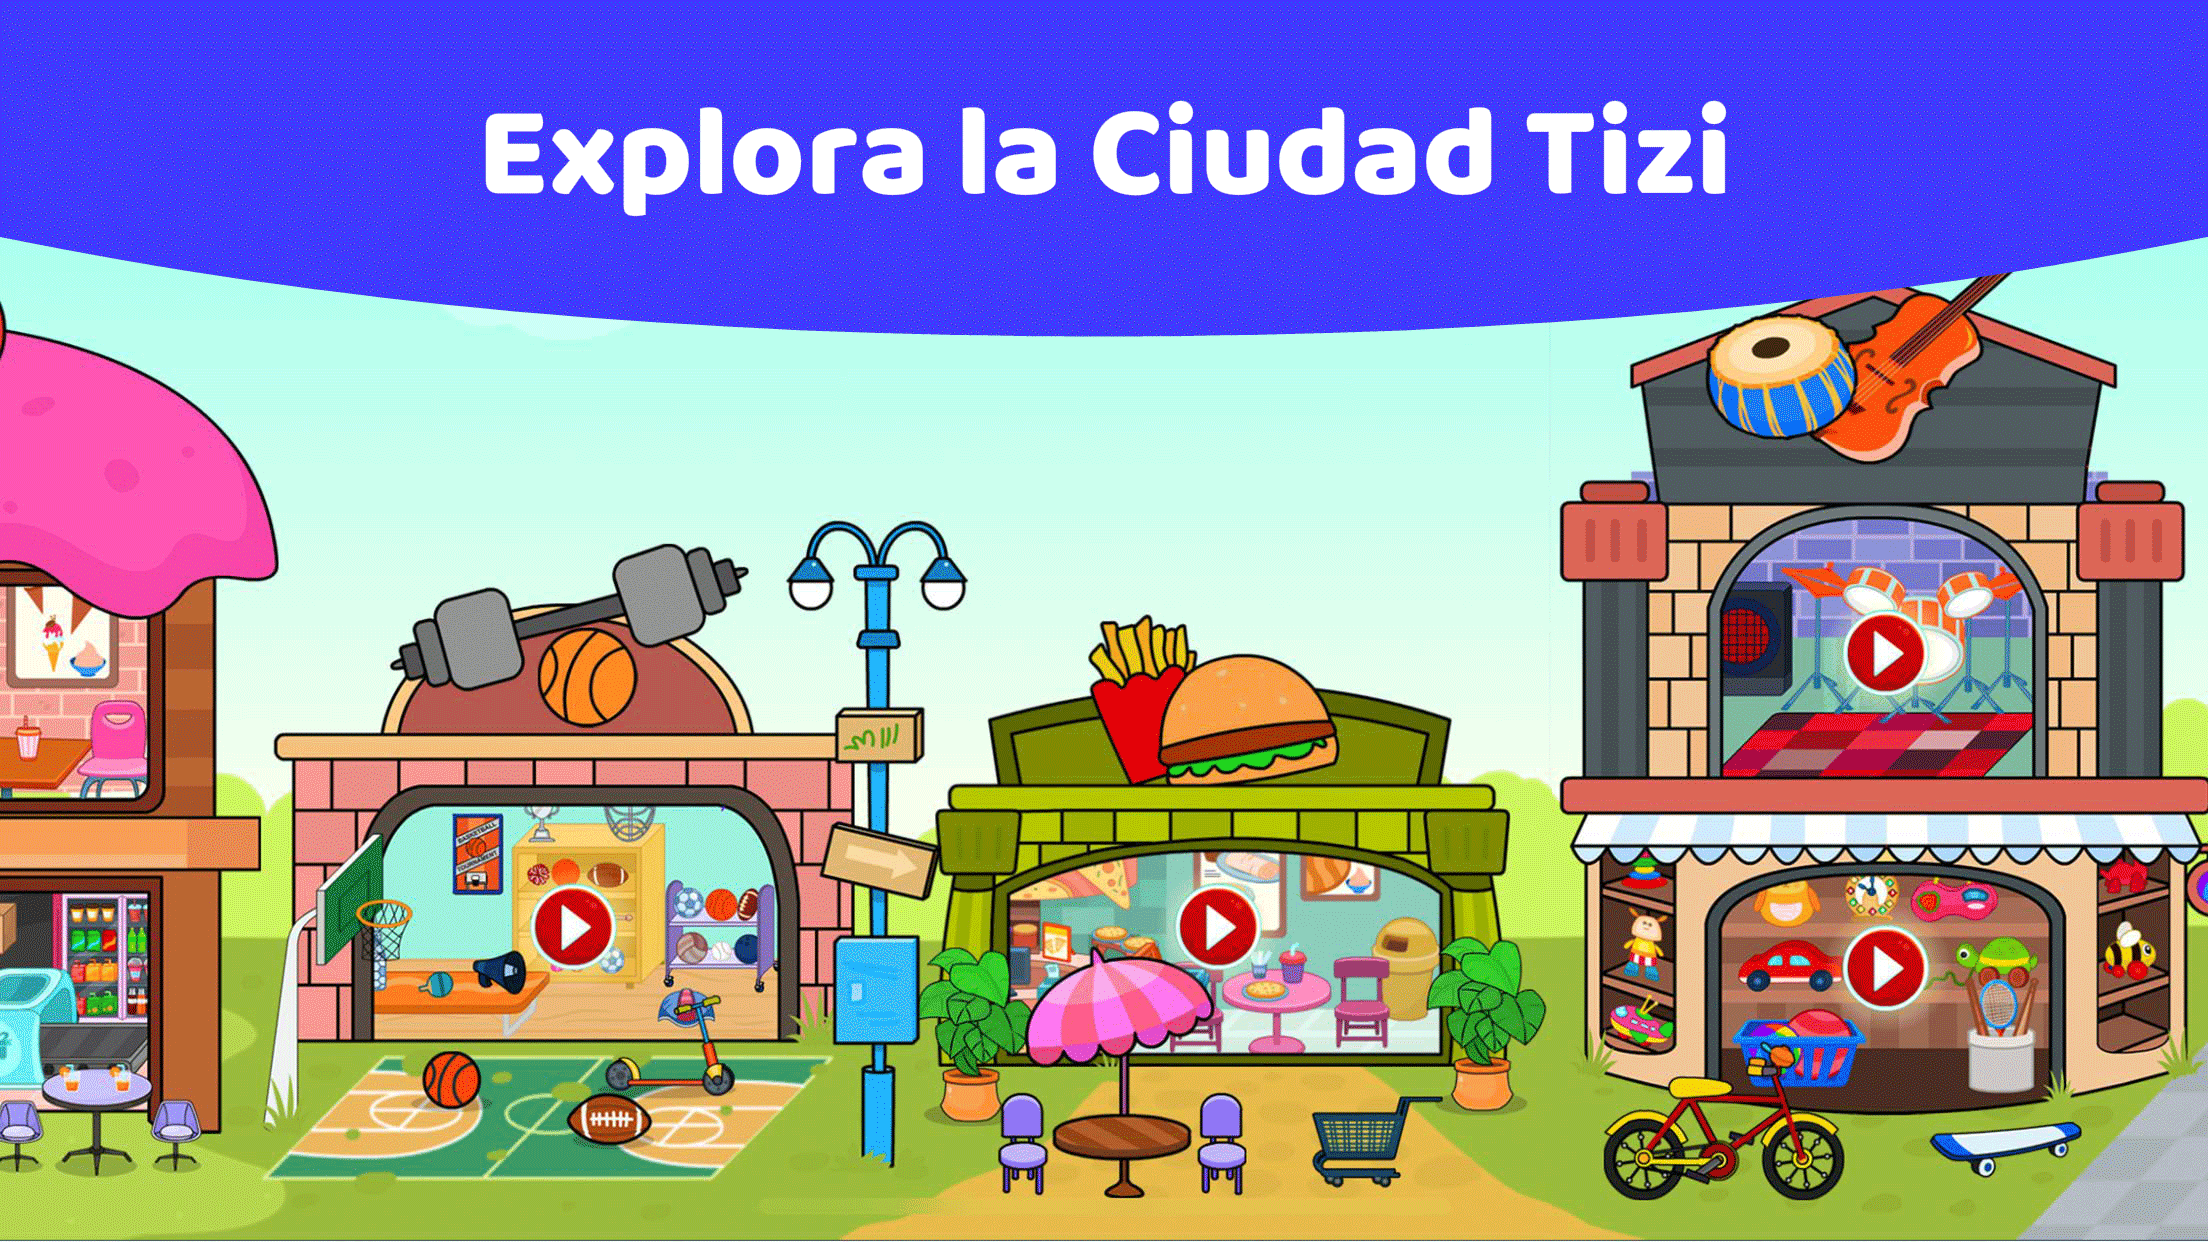 Screenshot 1 of Ciudad Tizi - Juego de Ciudad 3.6